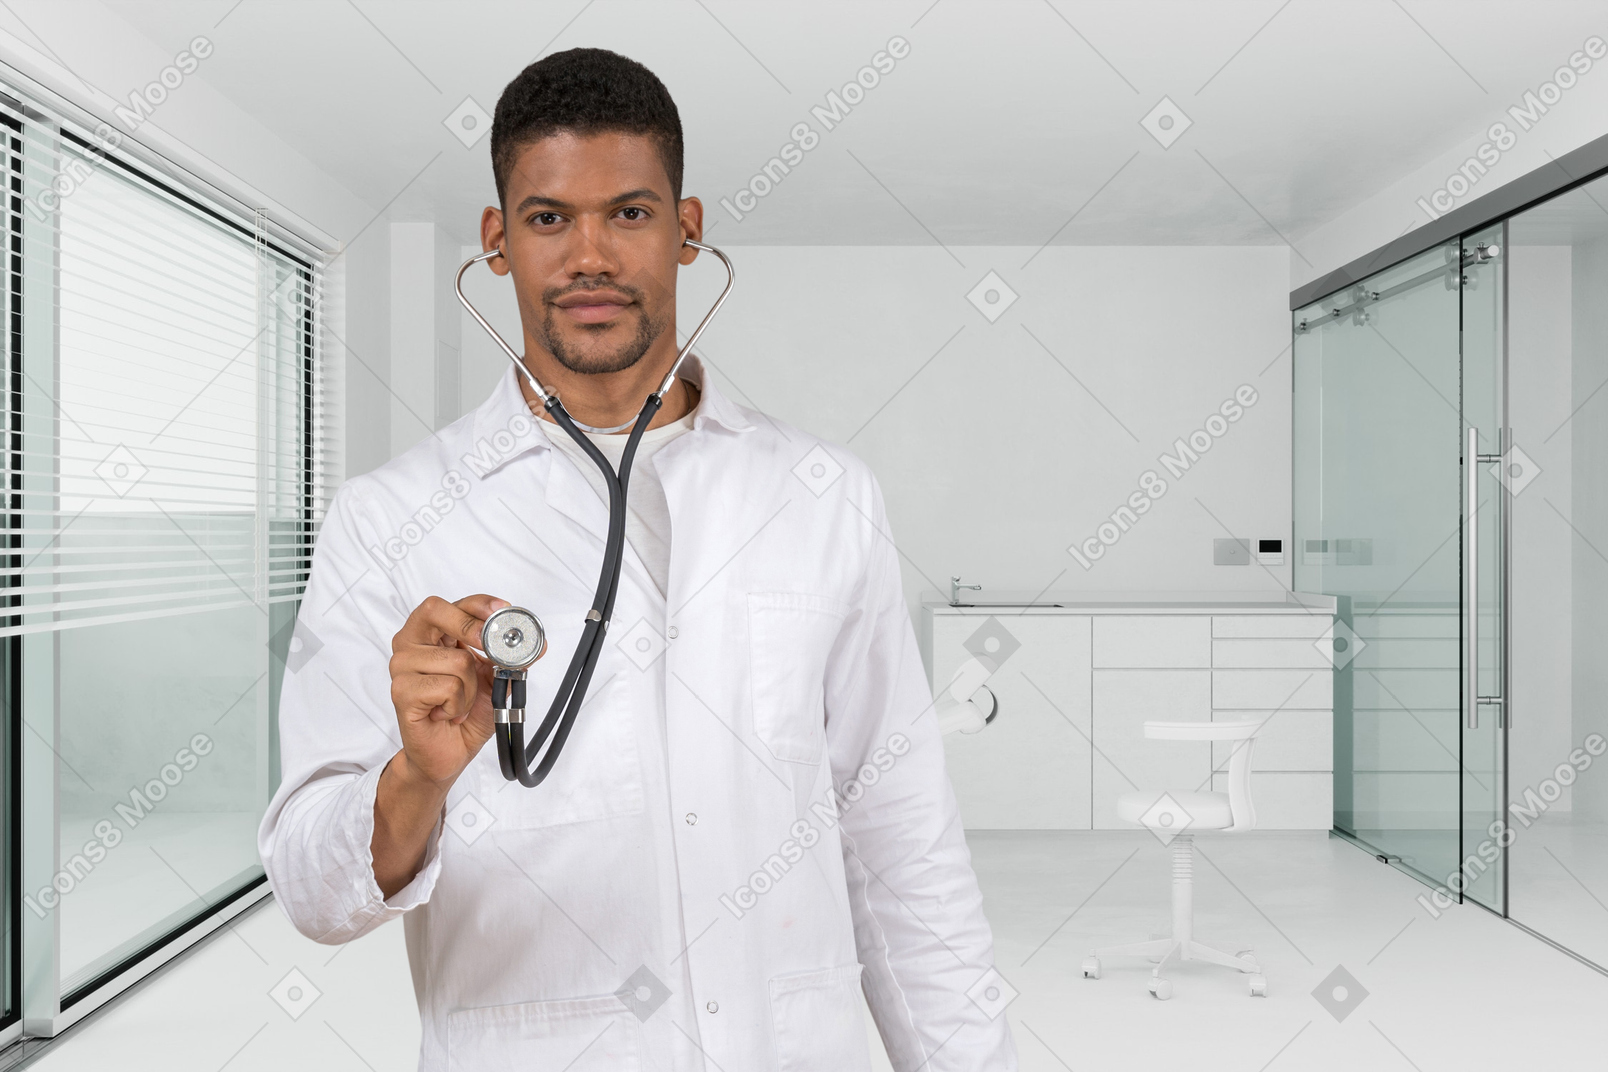 Porträt eines männlichen arztes in einem krankenzimmer